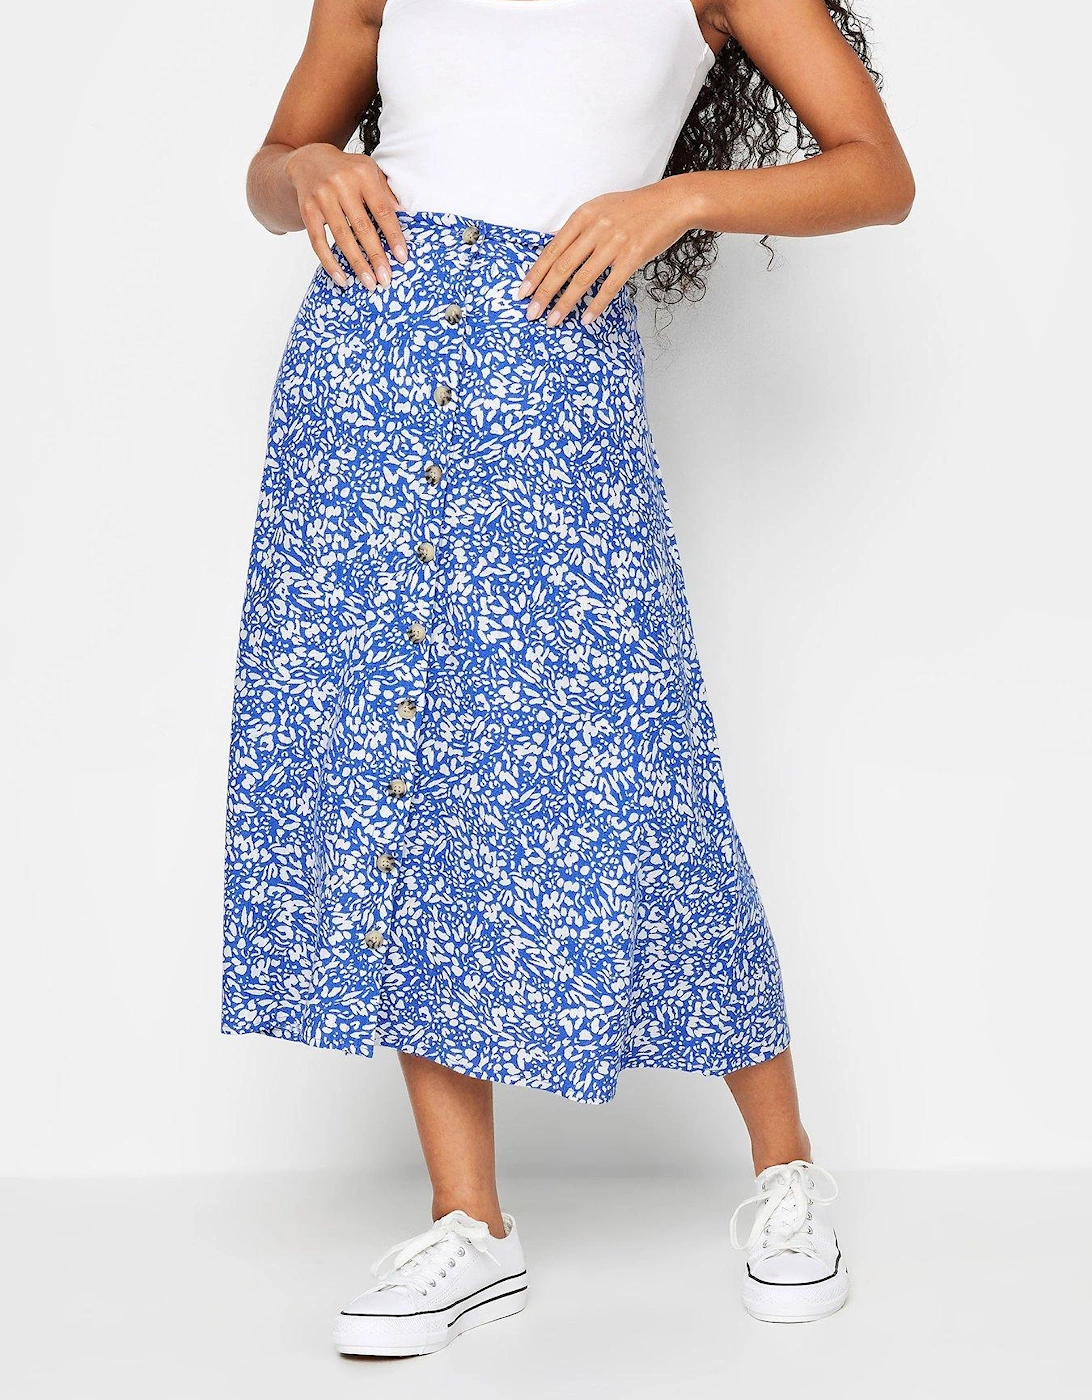 Petite Blue White Markings Print Linen Skirt, 2 of 1